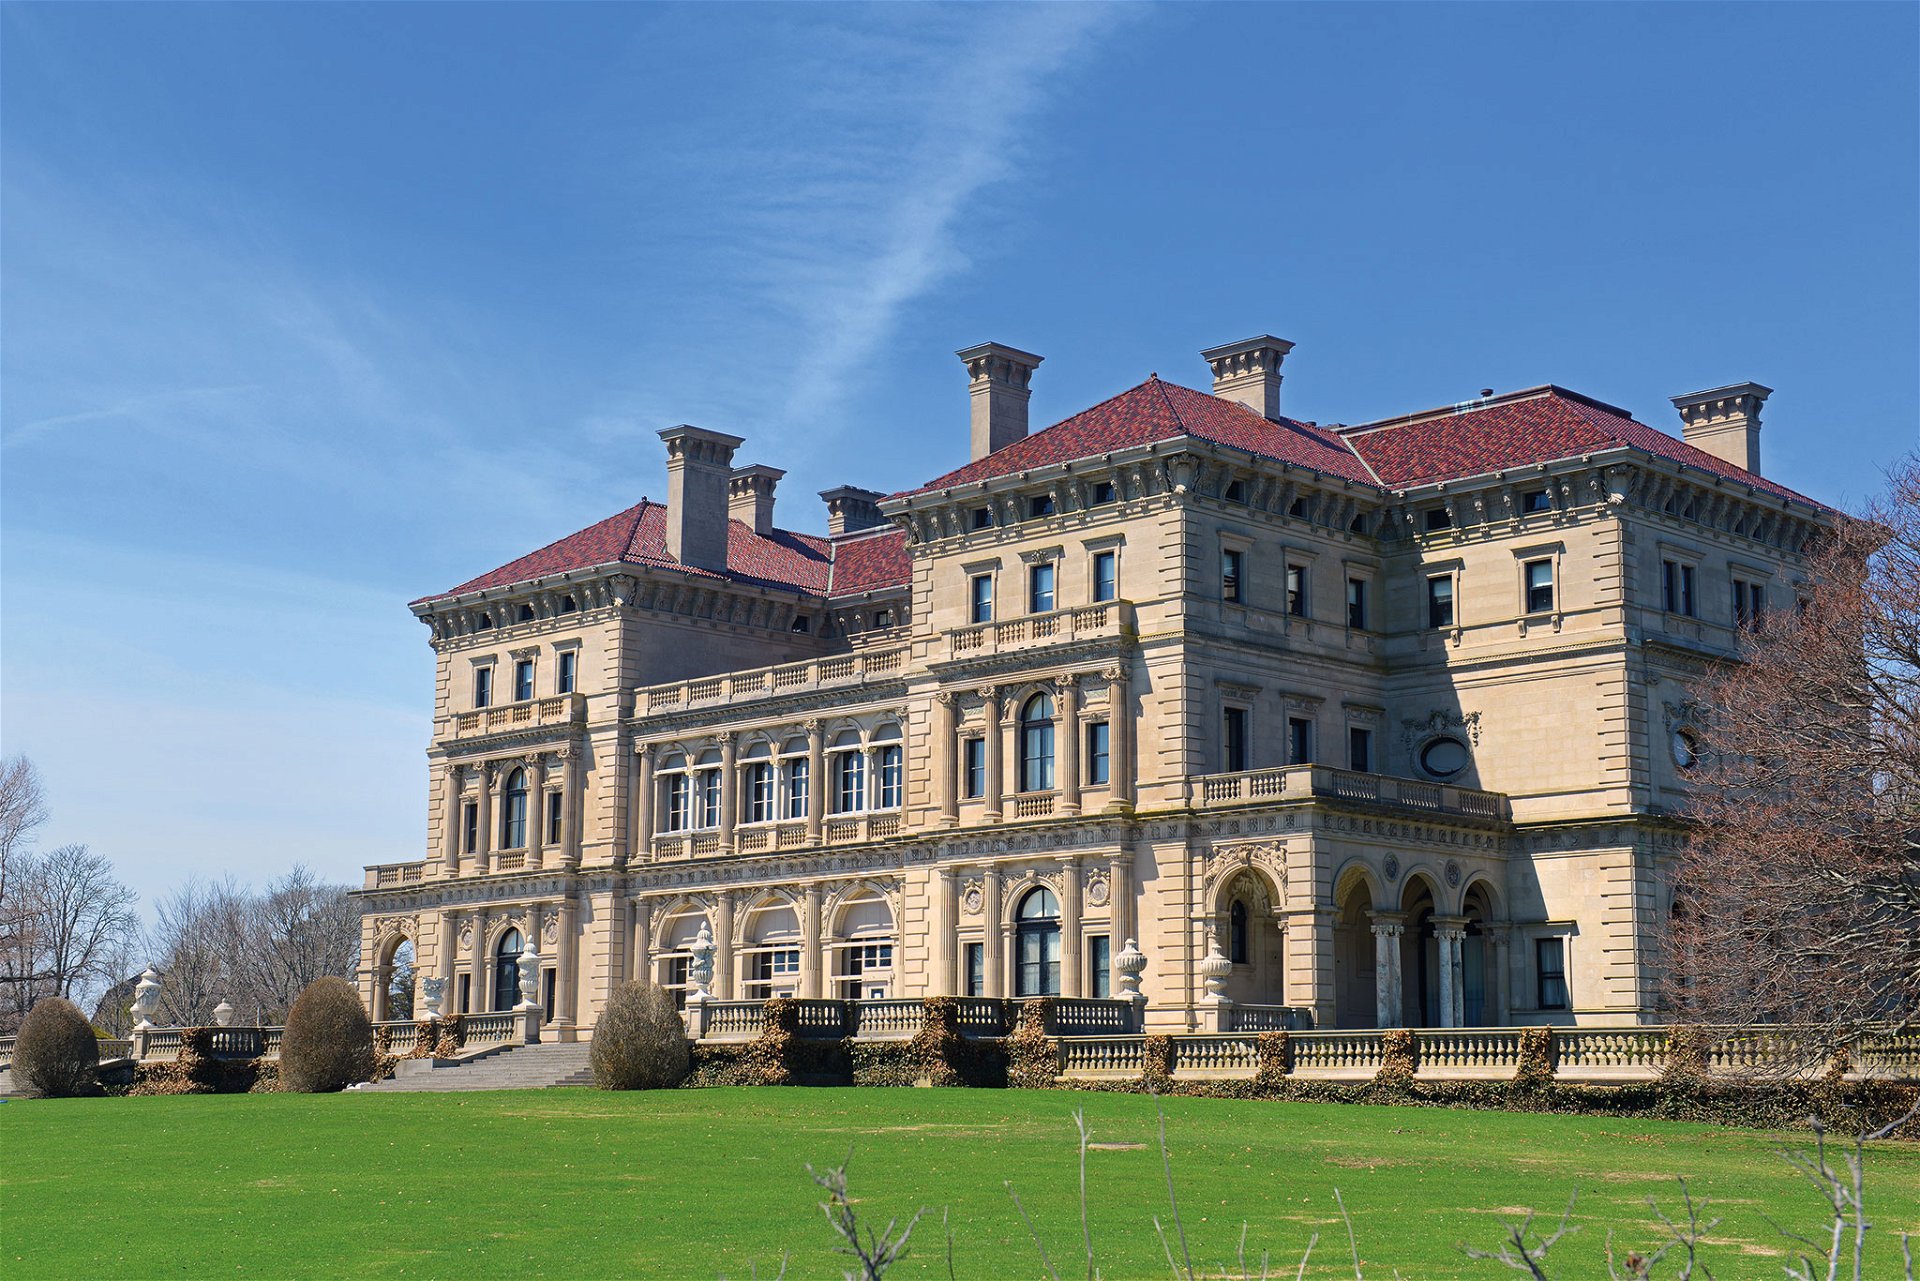 Cornelius Vanderbilt II. ließ in Newport die Super-Mansion »The Breakers« bauen. Architektonisches Vorbild waren die italienischen Renaissancepaläste. Eklektik und Prunksucht at its best.